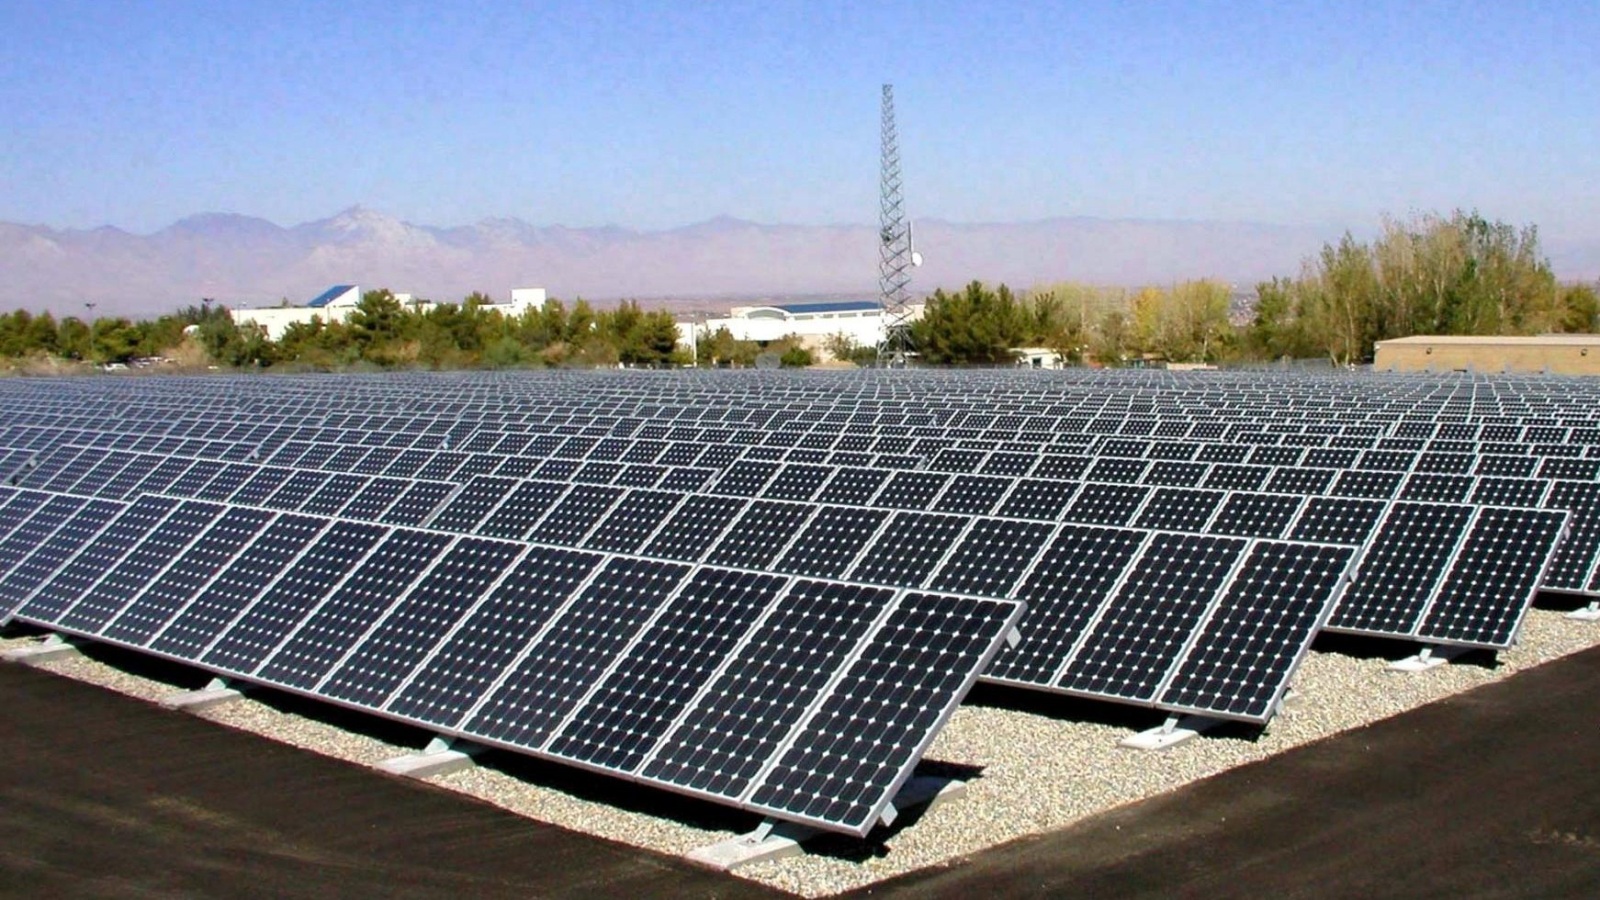 ‪المغرب يتوقع أن تصل قدرته على إنتاج الكهرباء من الطاقة الشمسية إلى ألفي ميغاوات سنة 2020‬ (الجزيرة)